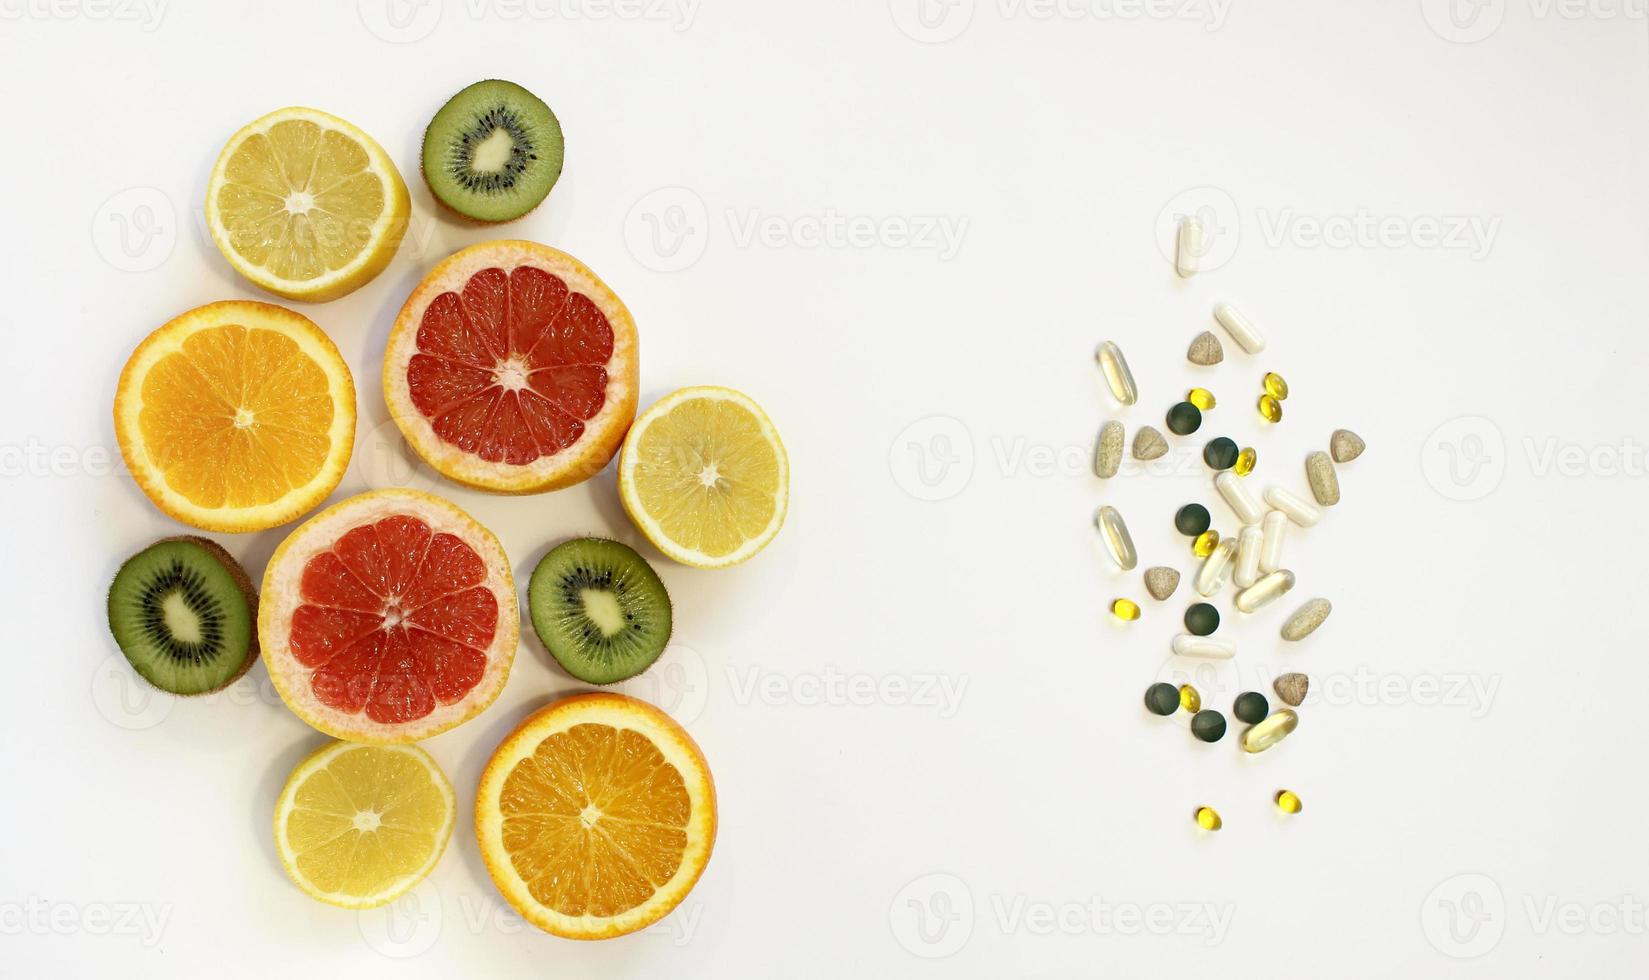 frische natürliche Früchte vs. Pillen. Natürliches Vitamin in Früchten vs. synthetisches Vitamin in Pillen. Wahl zwischen natürlicher und synthetischer Art der Gesundheitsvorsorge. alternative Medizin. foto